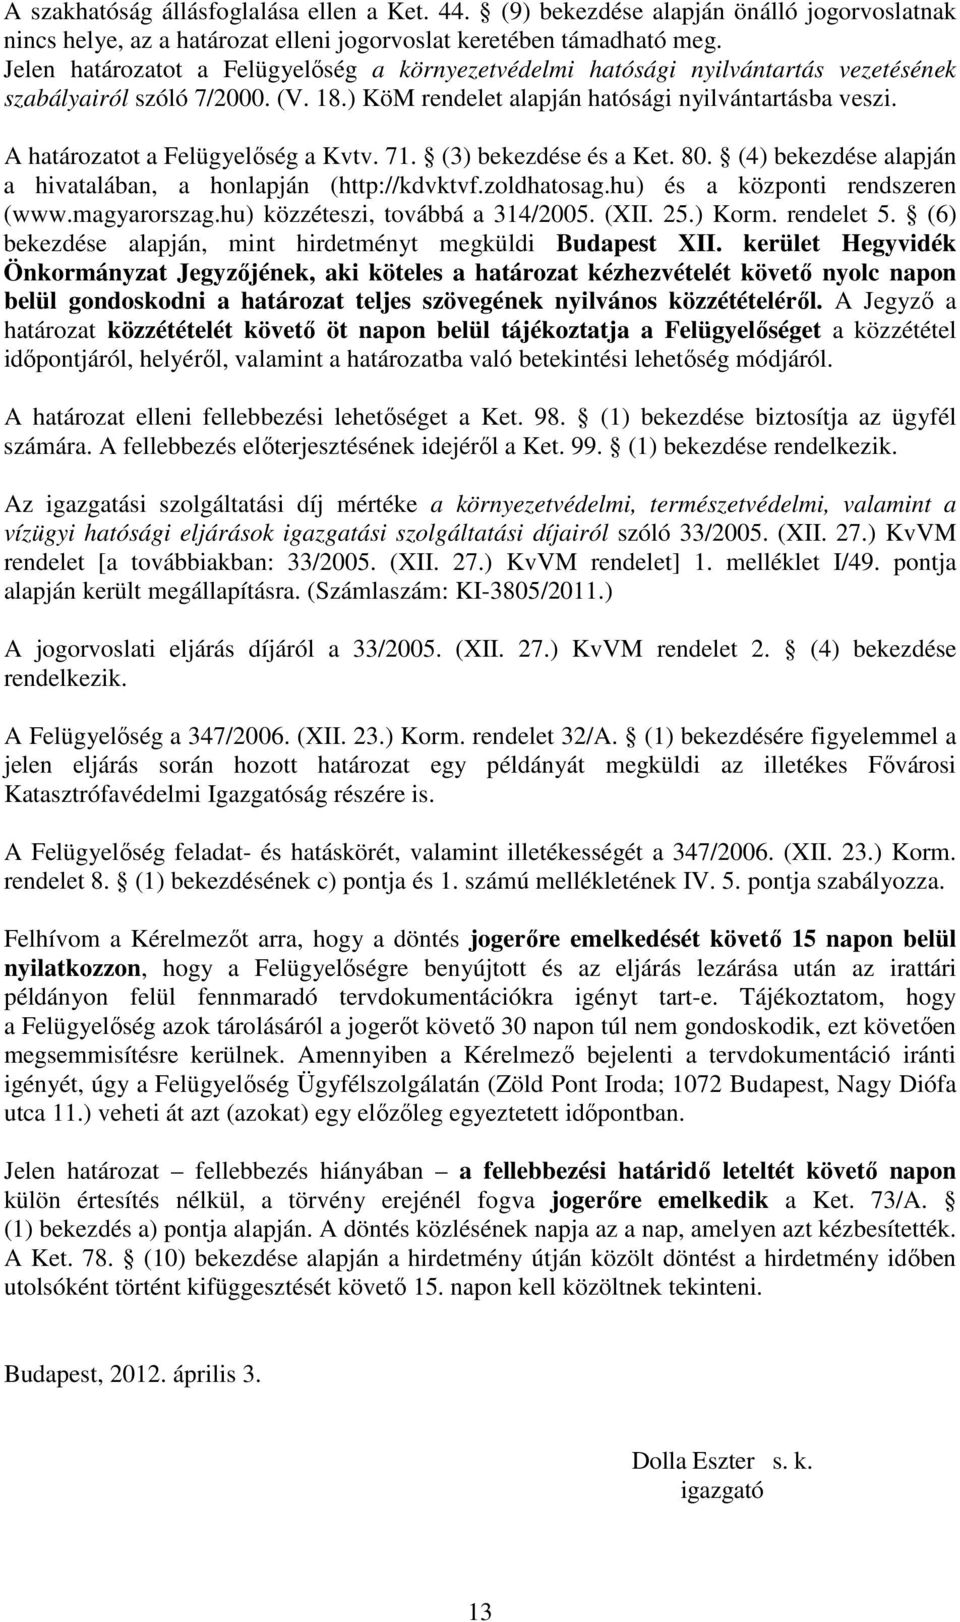 A határozatot a Felügyelőség a Kvtv. 71. (3) bekezdése és a Ket. 80. (4) bekezdése alapján a hivatalában, a honlapján (http://kdvktvf.zoldhatosag.hu) és a központi rendszeren (www.magyarorszag.